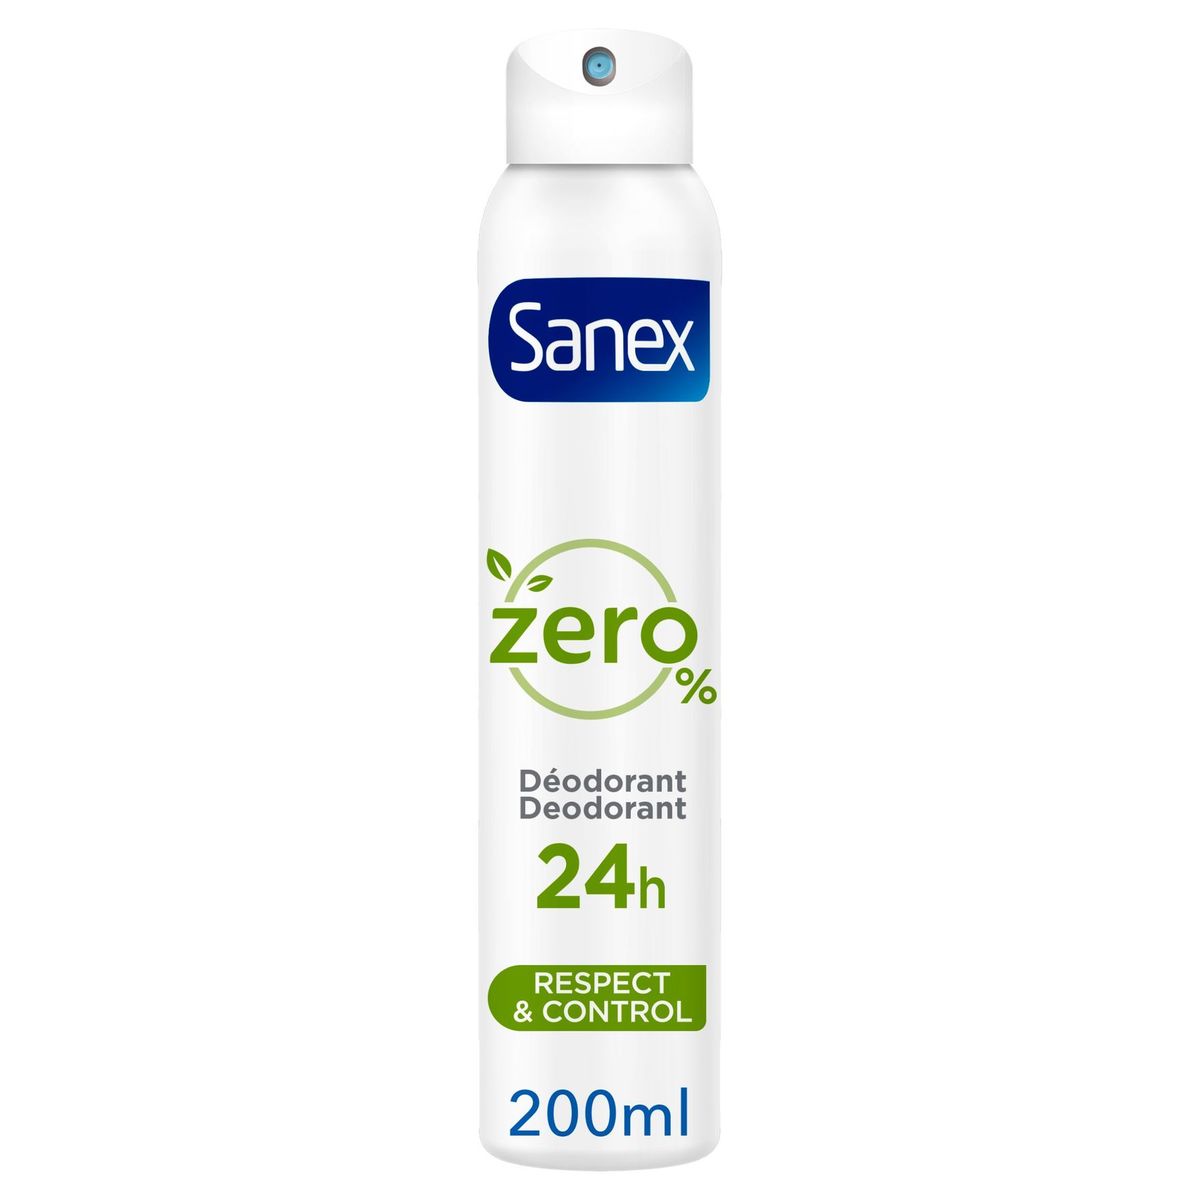 Sanex Zero% Respect & Control Deodorant Spray 200ml